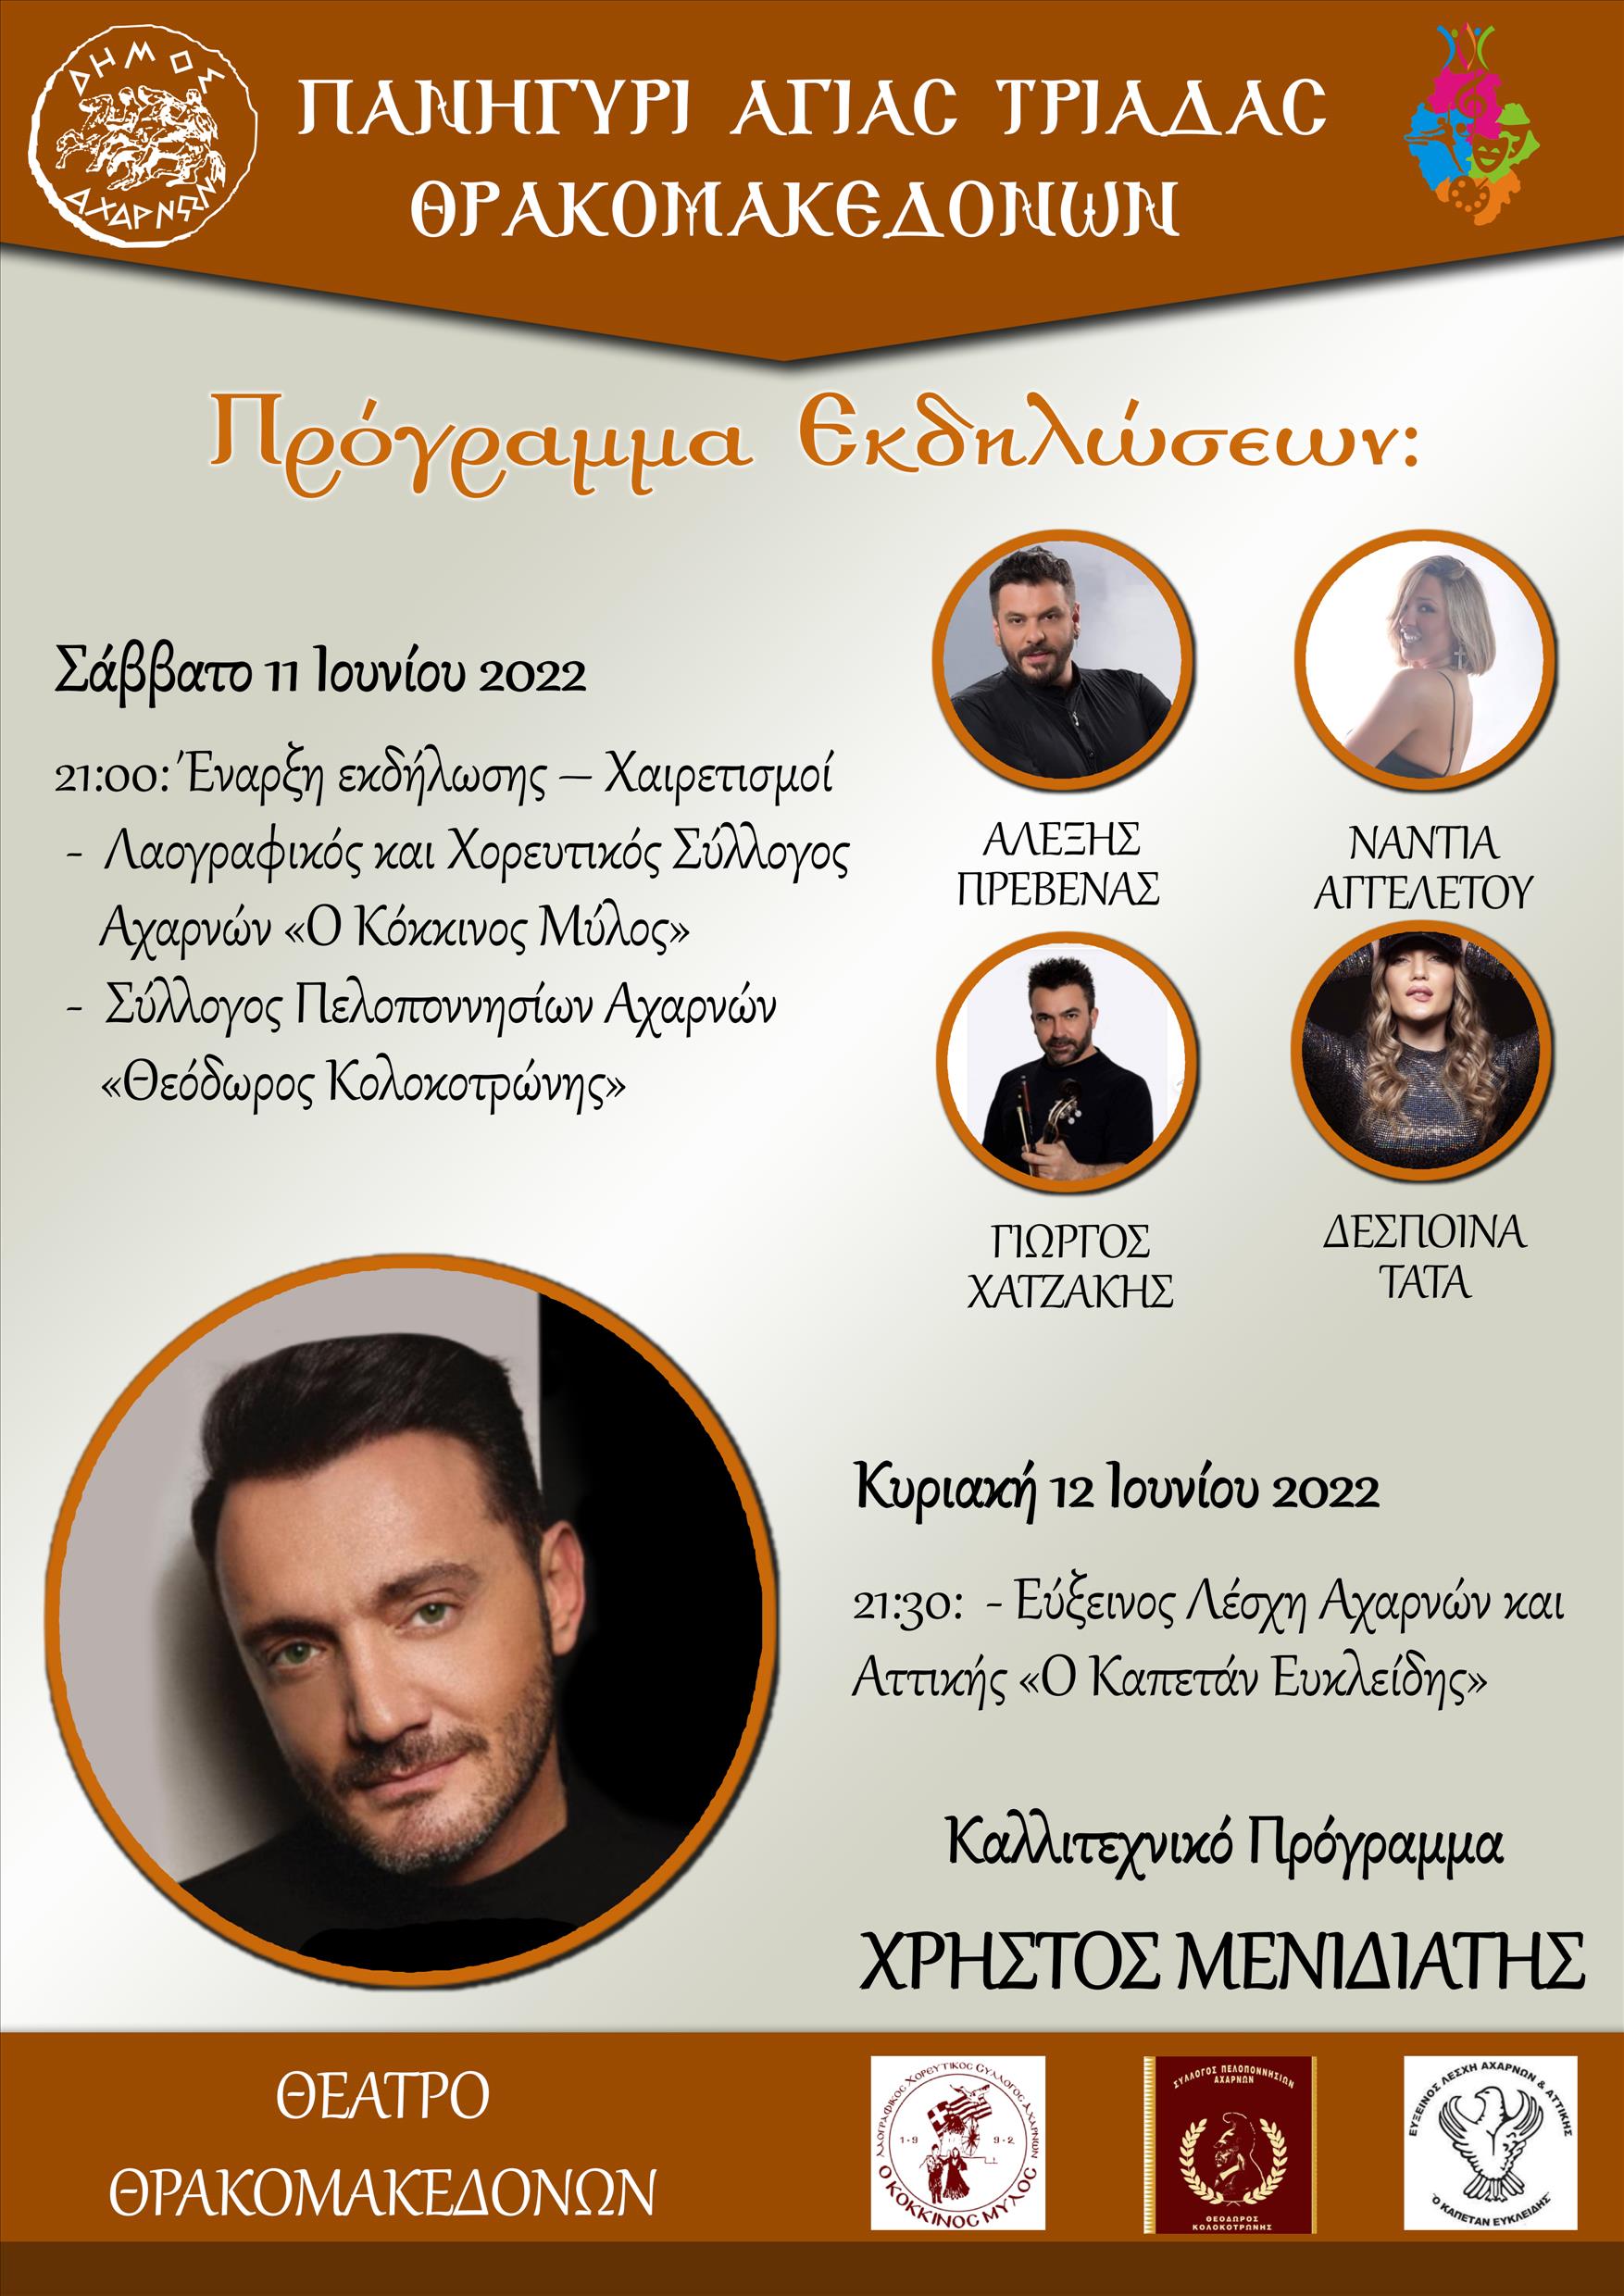 Πολιτιστικές εκδηλώσεις για τον εορτασμό του Ι.Ν. Αγ.Τριάδος Θρακομακεδόνων